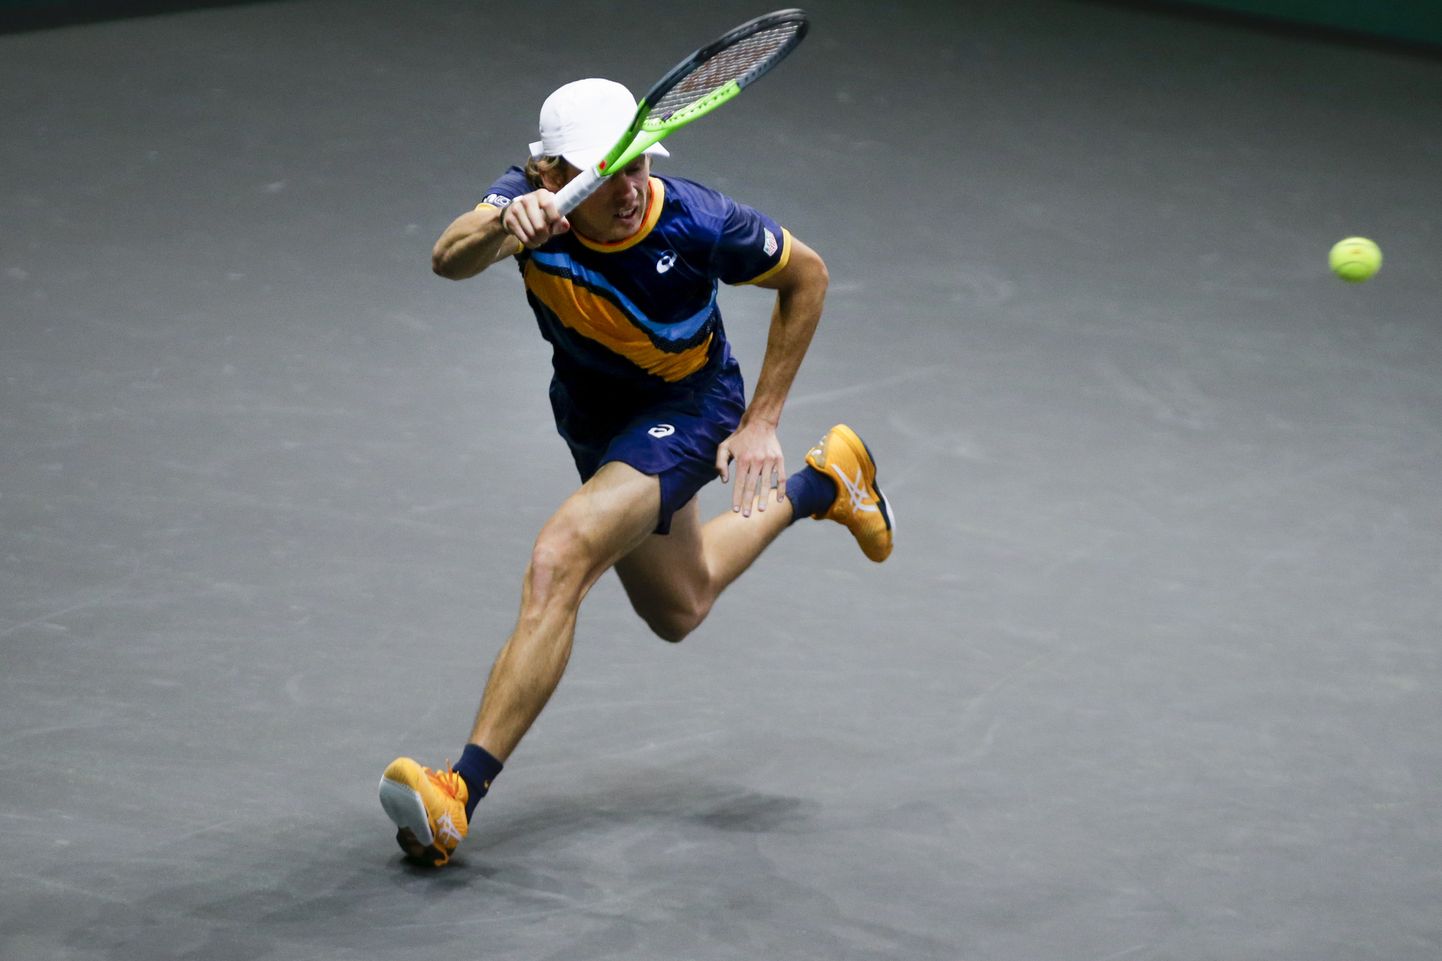 22-aastane austraallane Alex De Minaur oli Rotterdamis teisipäeval toimunud tenniseetenduses peategelase rollis.